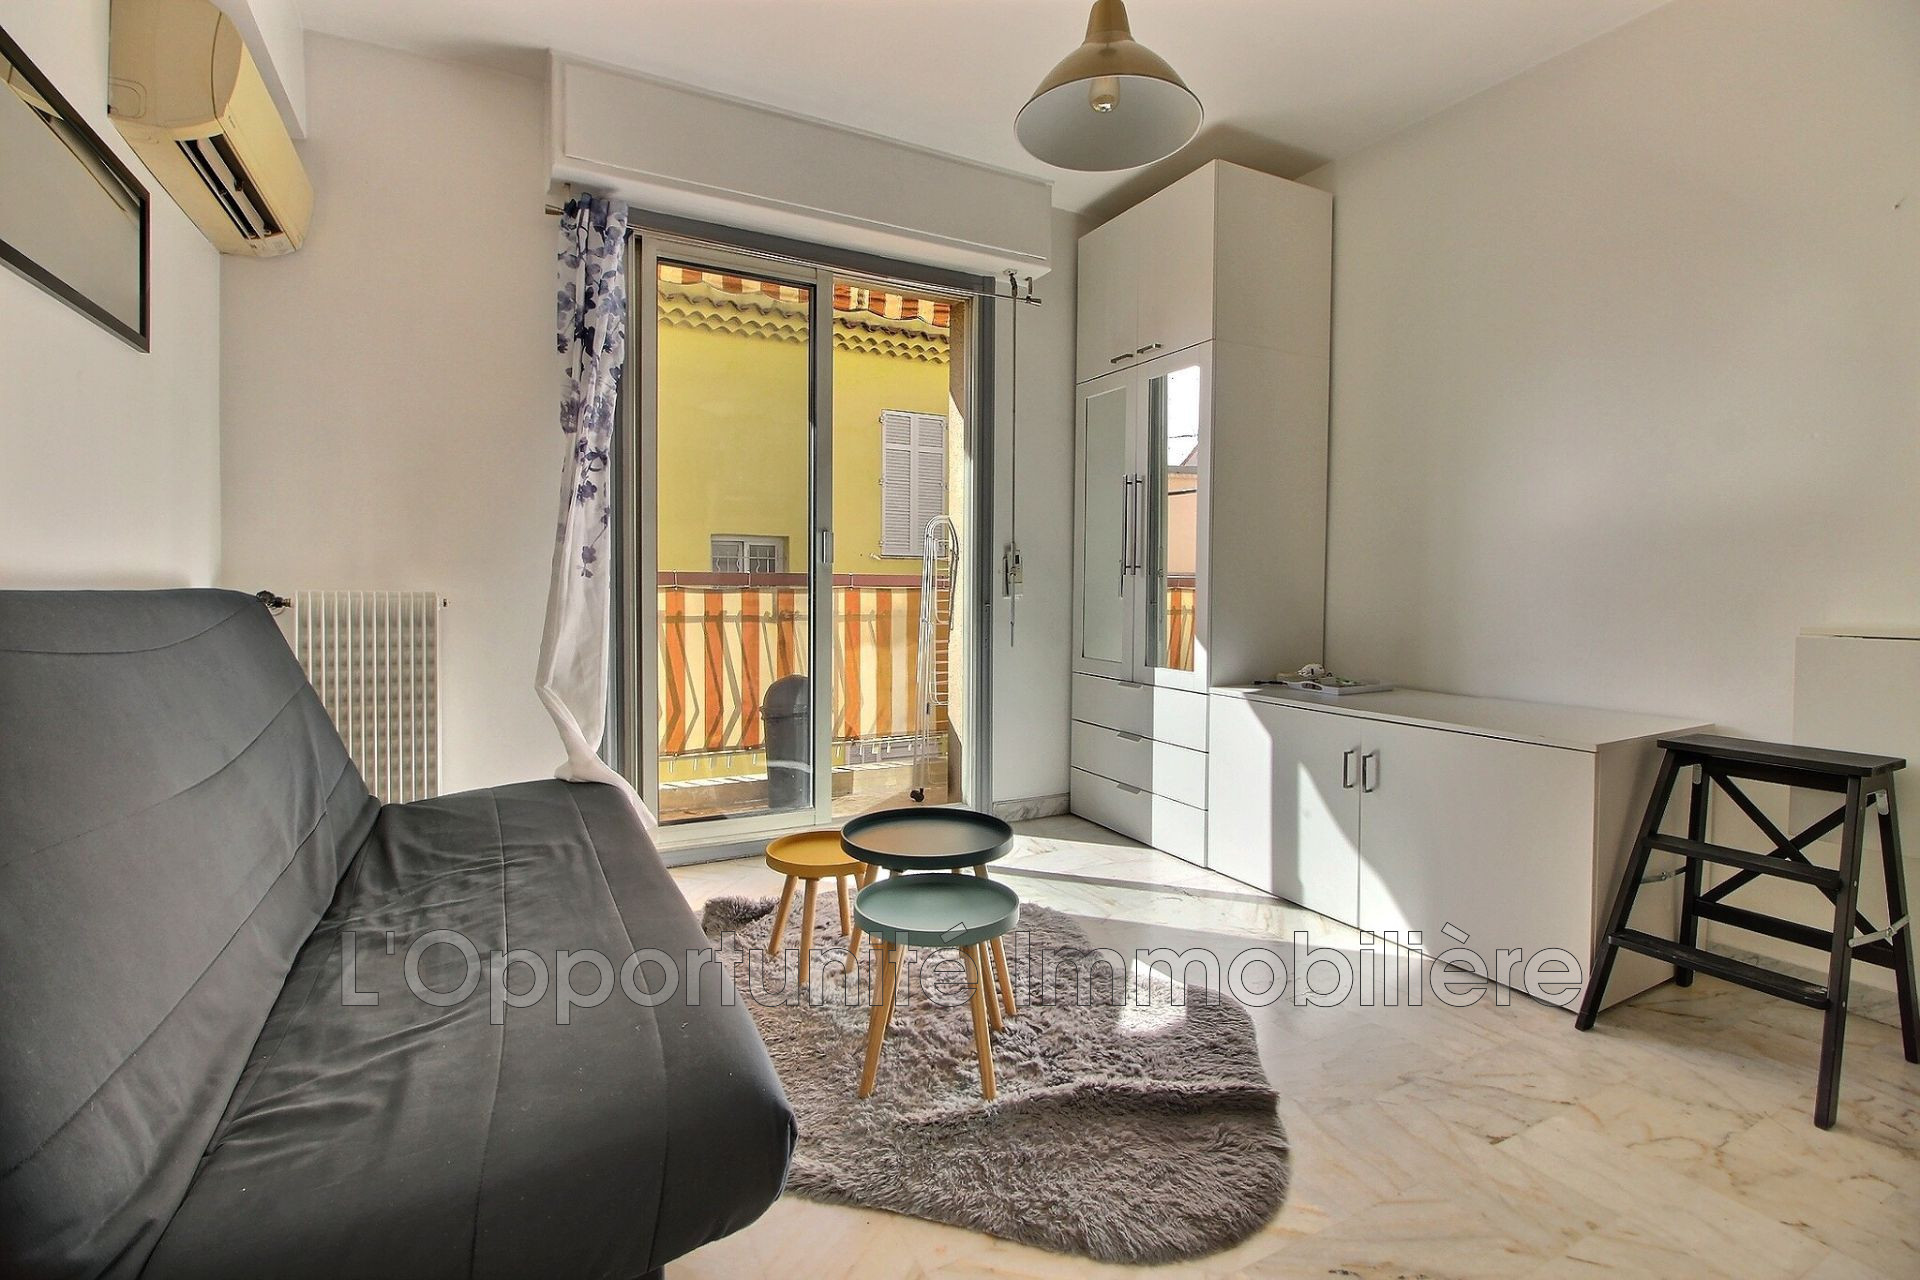 Vente Appartement 19m² à Le Cannet (06110) - L'Opportunite Immobiliere